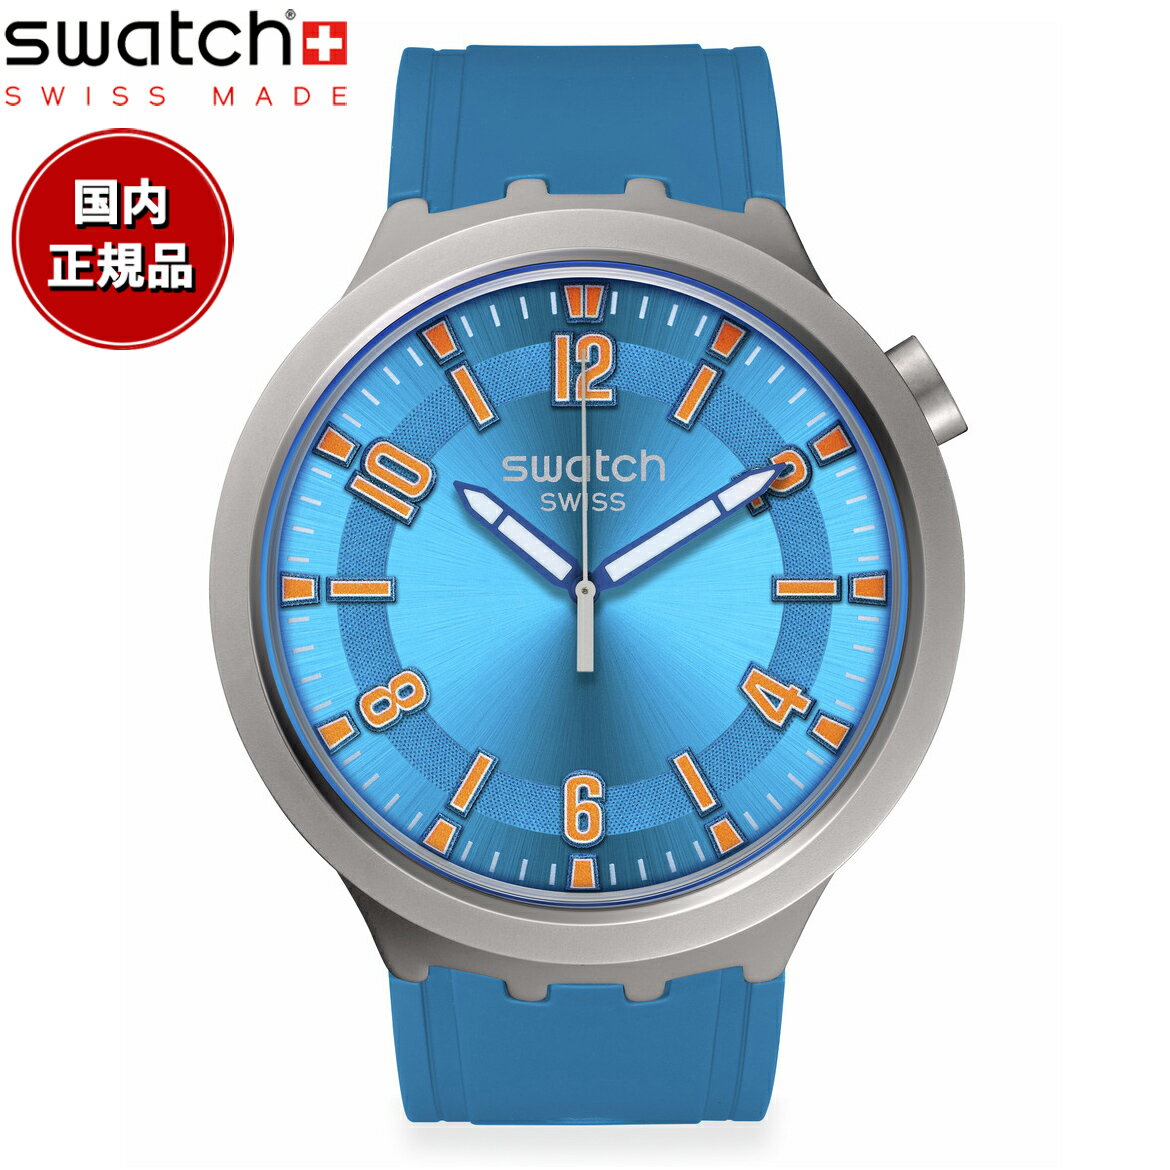 swatch スウォッチ ビッグボールド BIG BOLD BLUE IN THE WORKS 腕時計 メンズ レディース SB07S115【2..